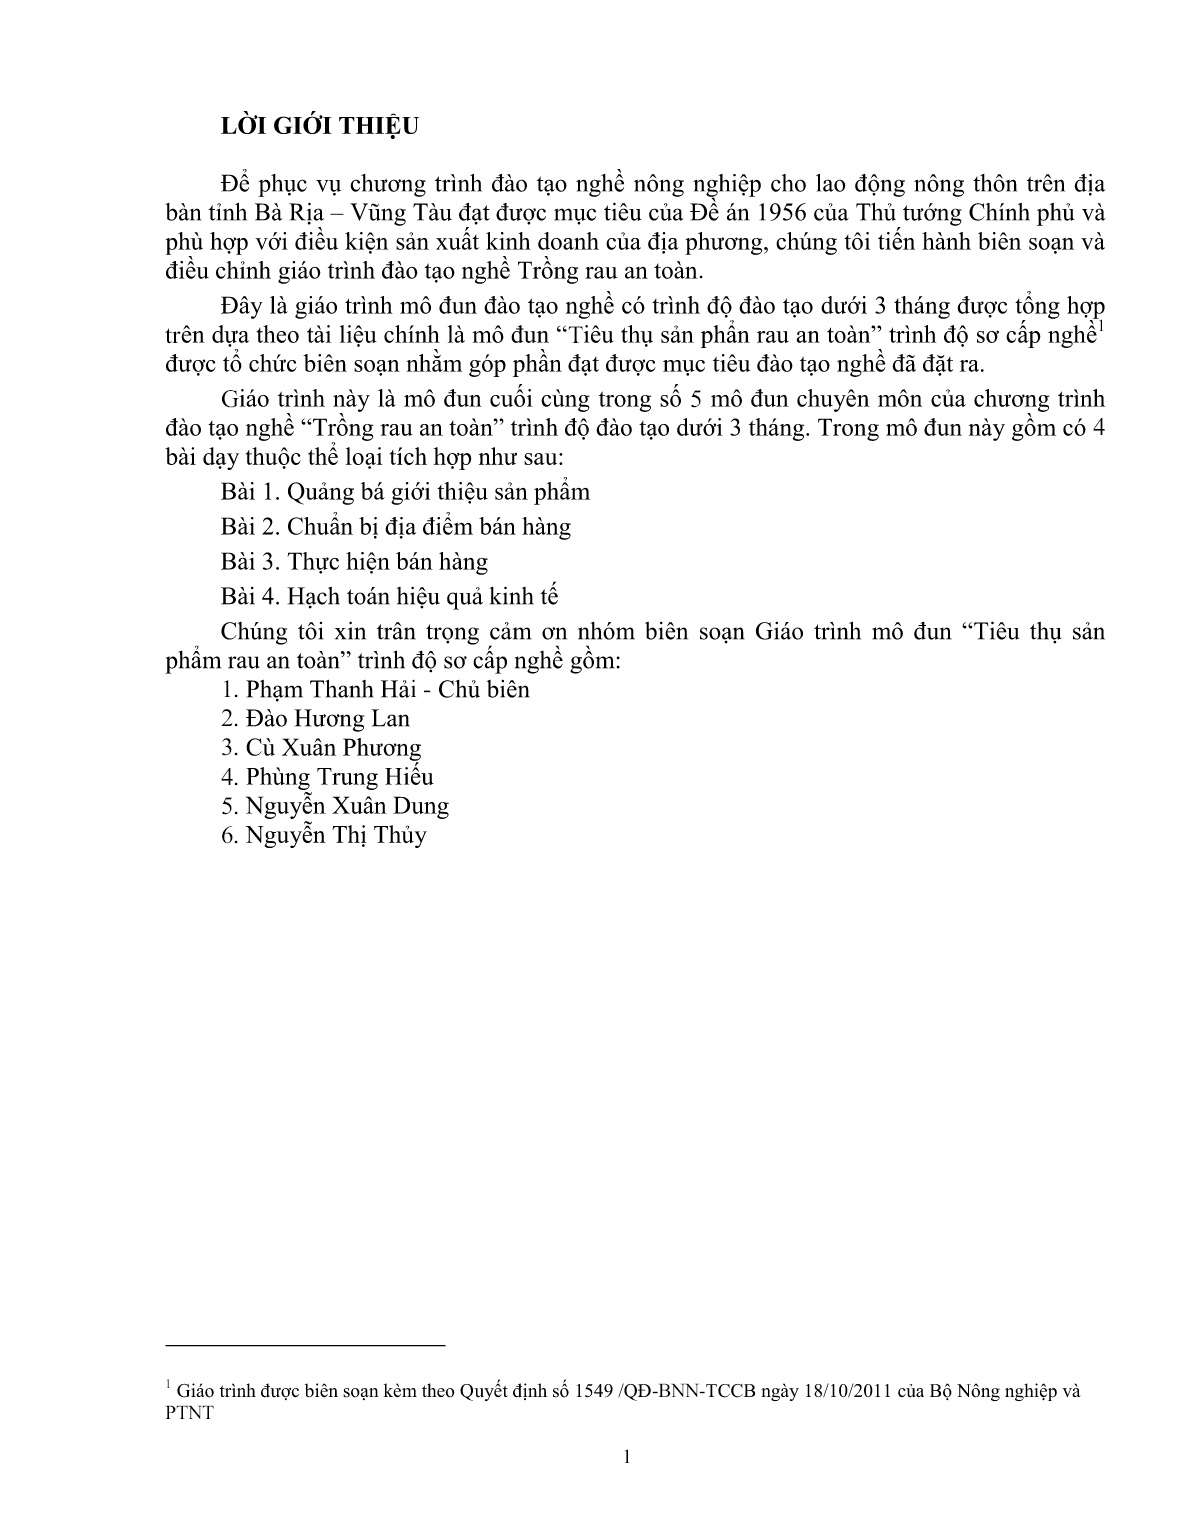 Giáo trình mô đun Tiêu thụ sản phẩn rau an toàn (Trình độ: Đào tạo dưới 03 tháng) trang 2